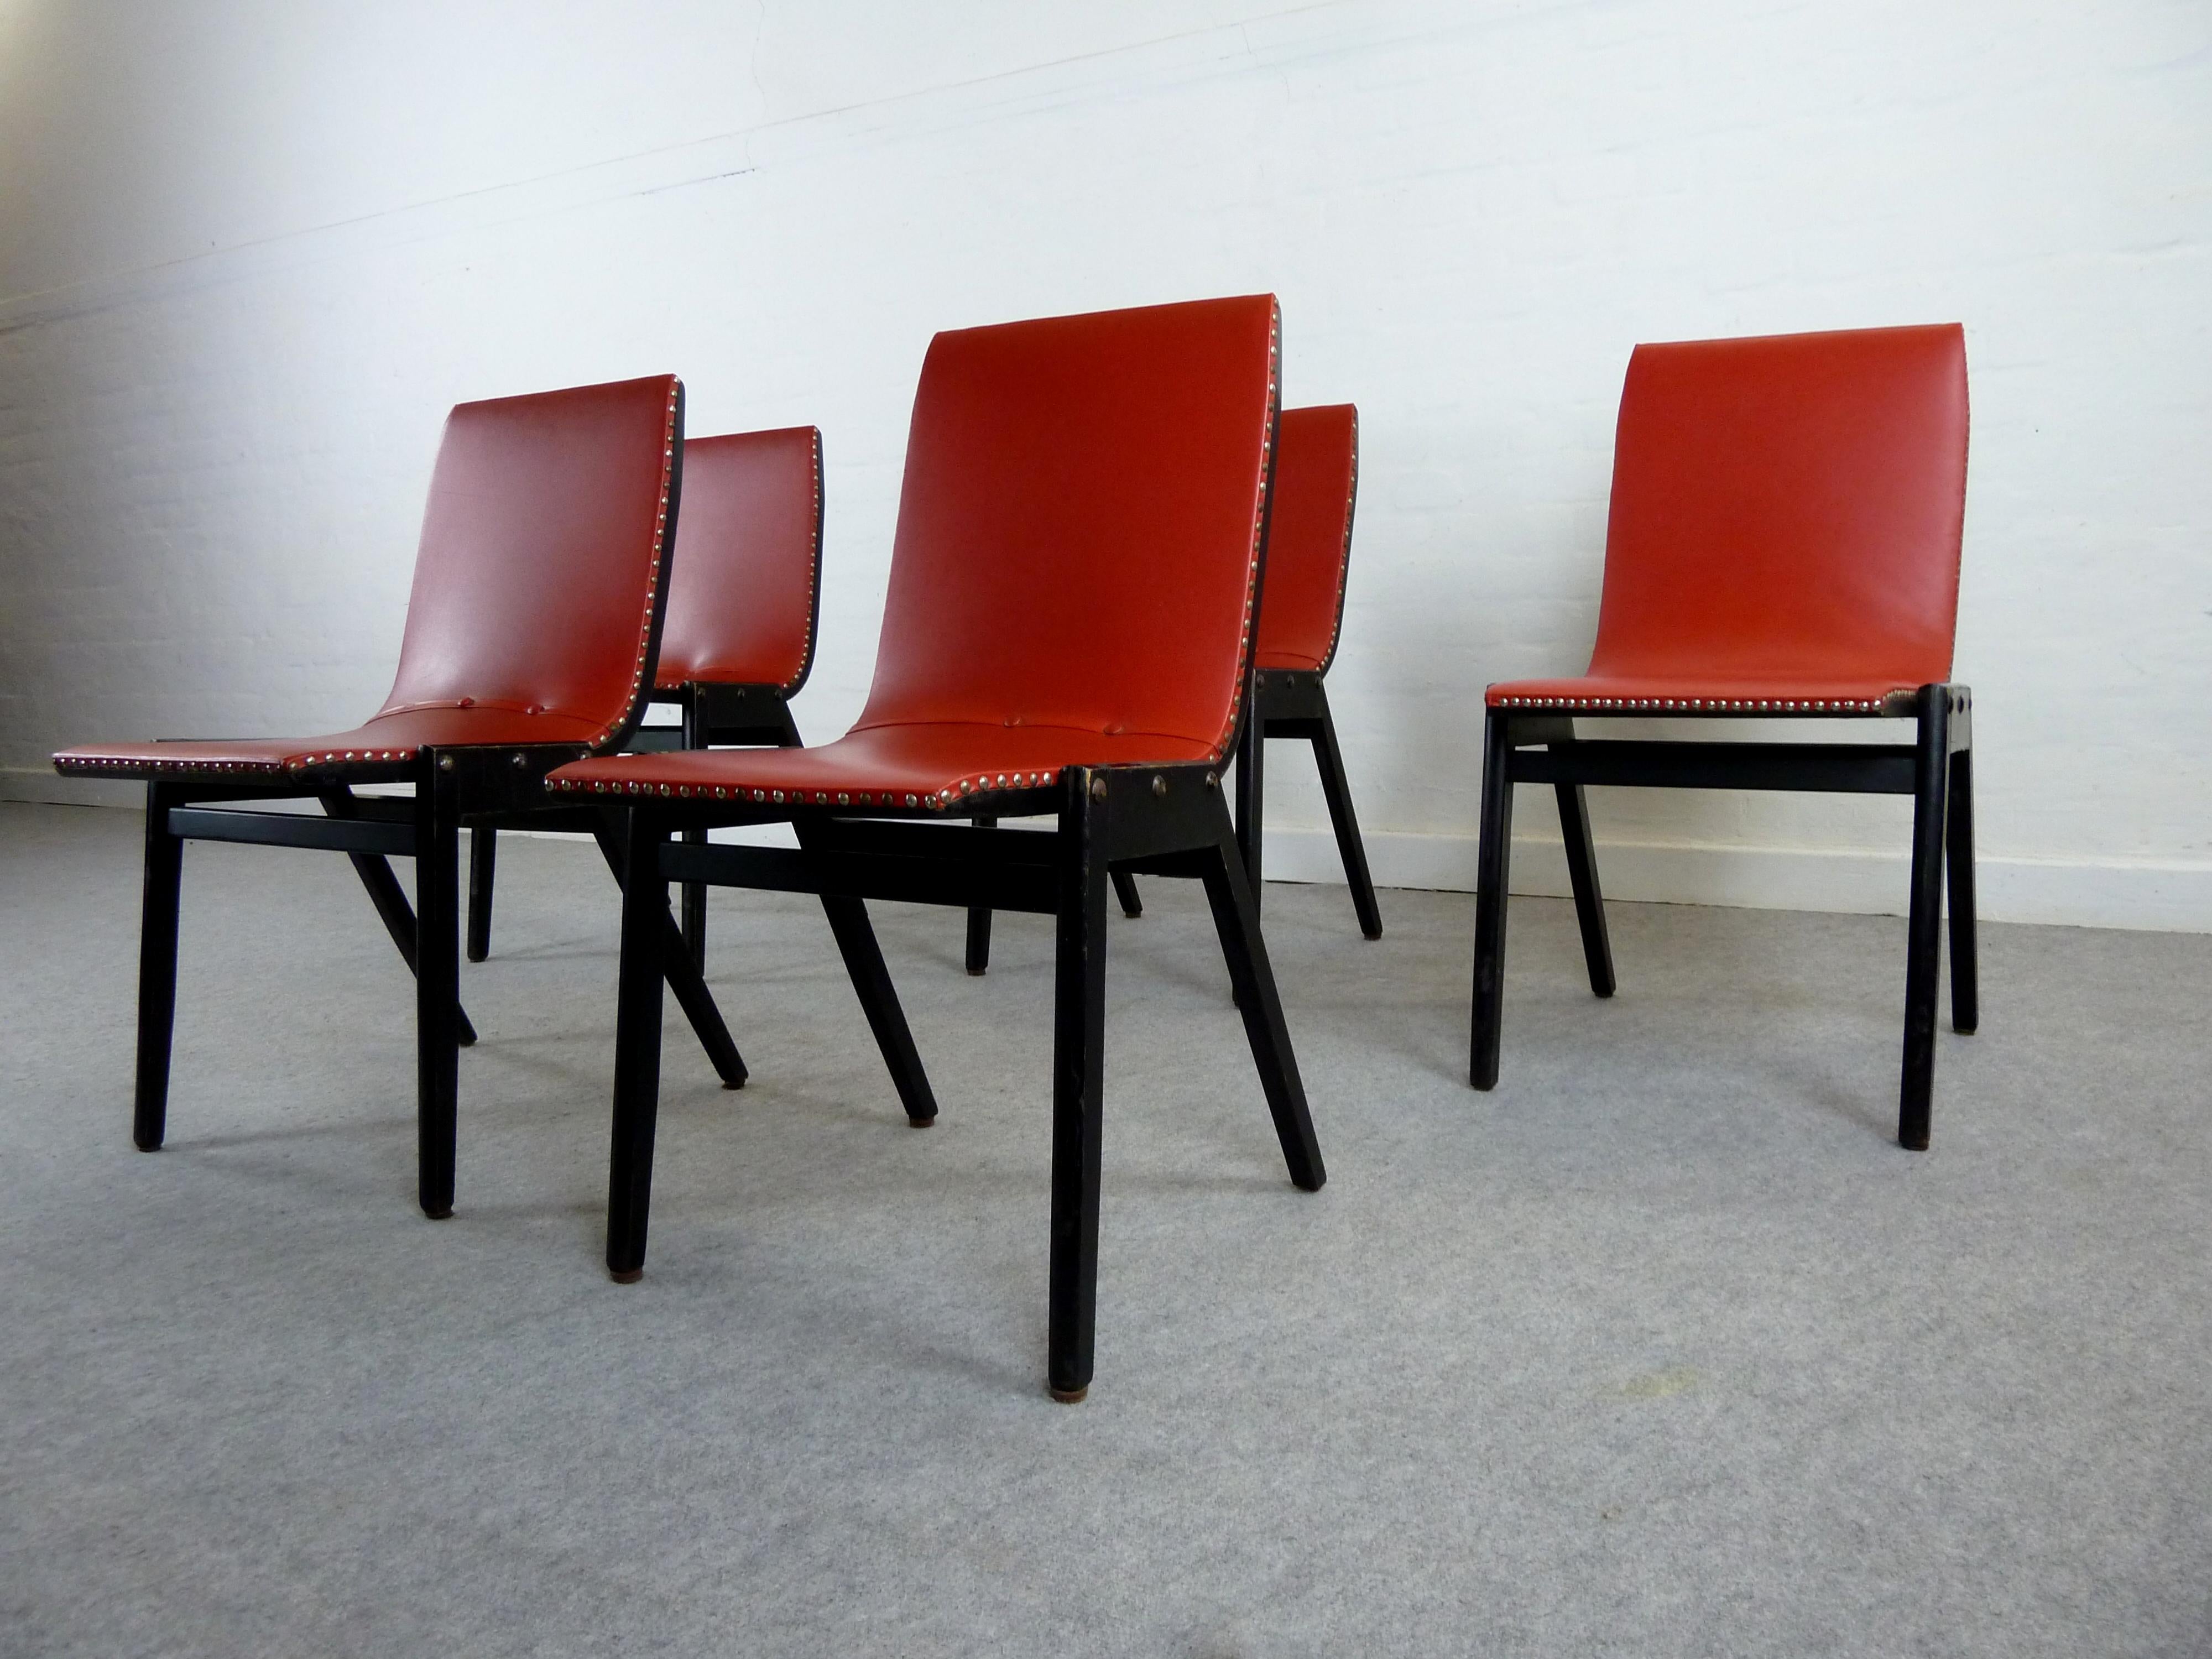 Rare ensemble de 5 chaises de l'architecte autrichien Roland Rainer conçues pour l'hôtel de ville de Vienne.
Version peu courante de l'original garni de cuir artificiel rouge des années 1950.
Bien utilisé mais toujours en bon état.